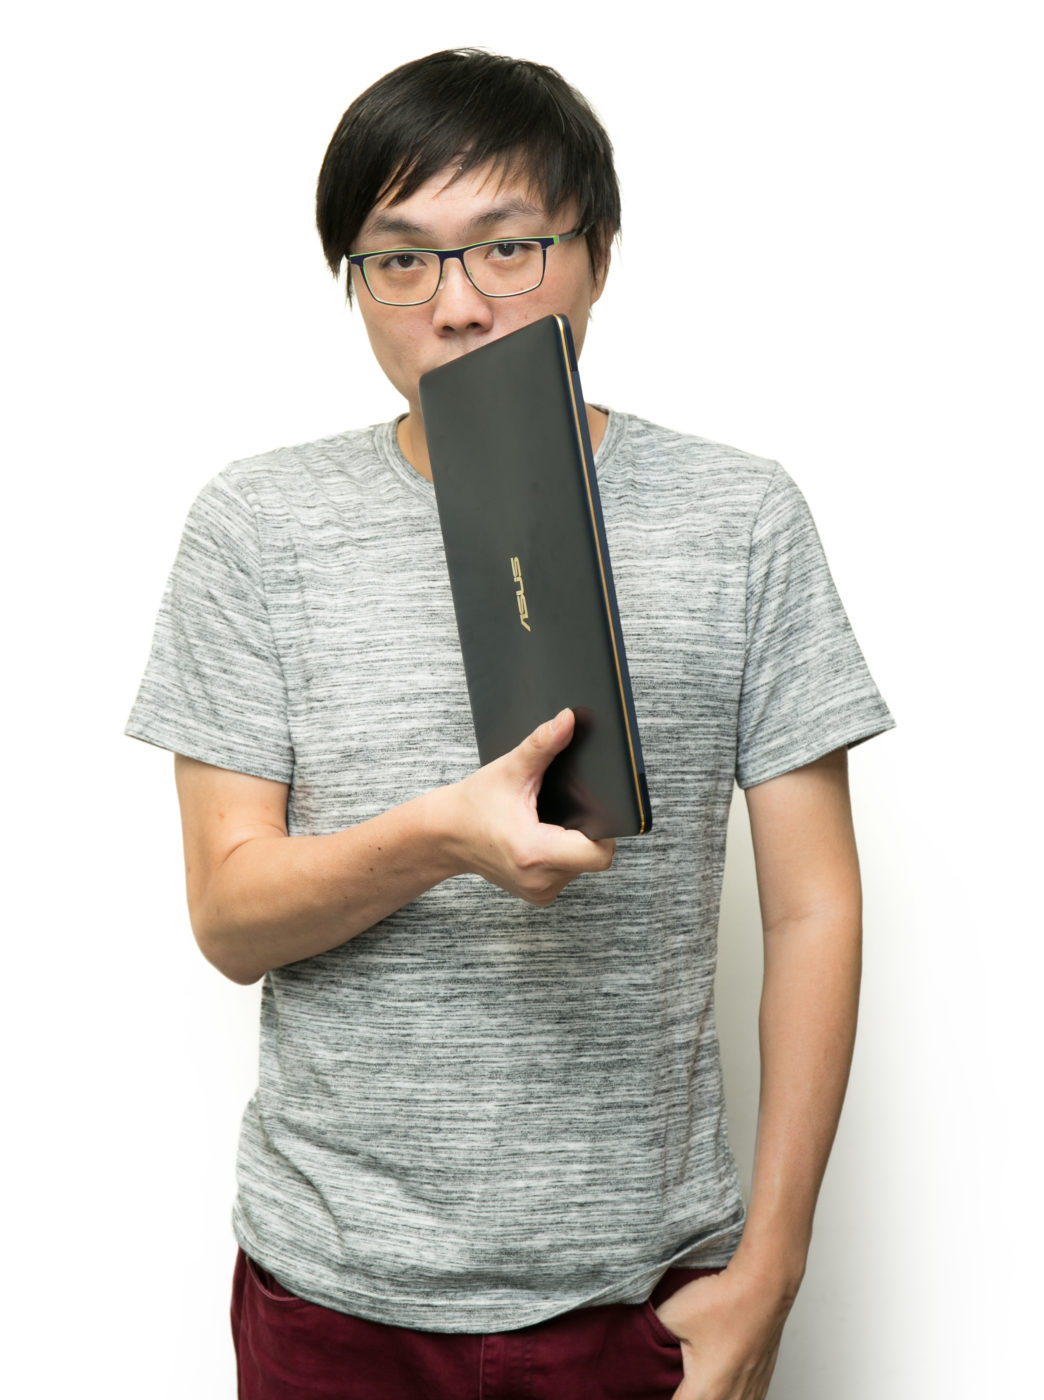 輕薄與強效的絕妙組合，ASUS ZenBook 3 Deluxe UX490 筆記型電腦評測 @3C 達人廖阿輝